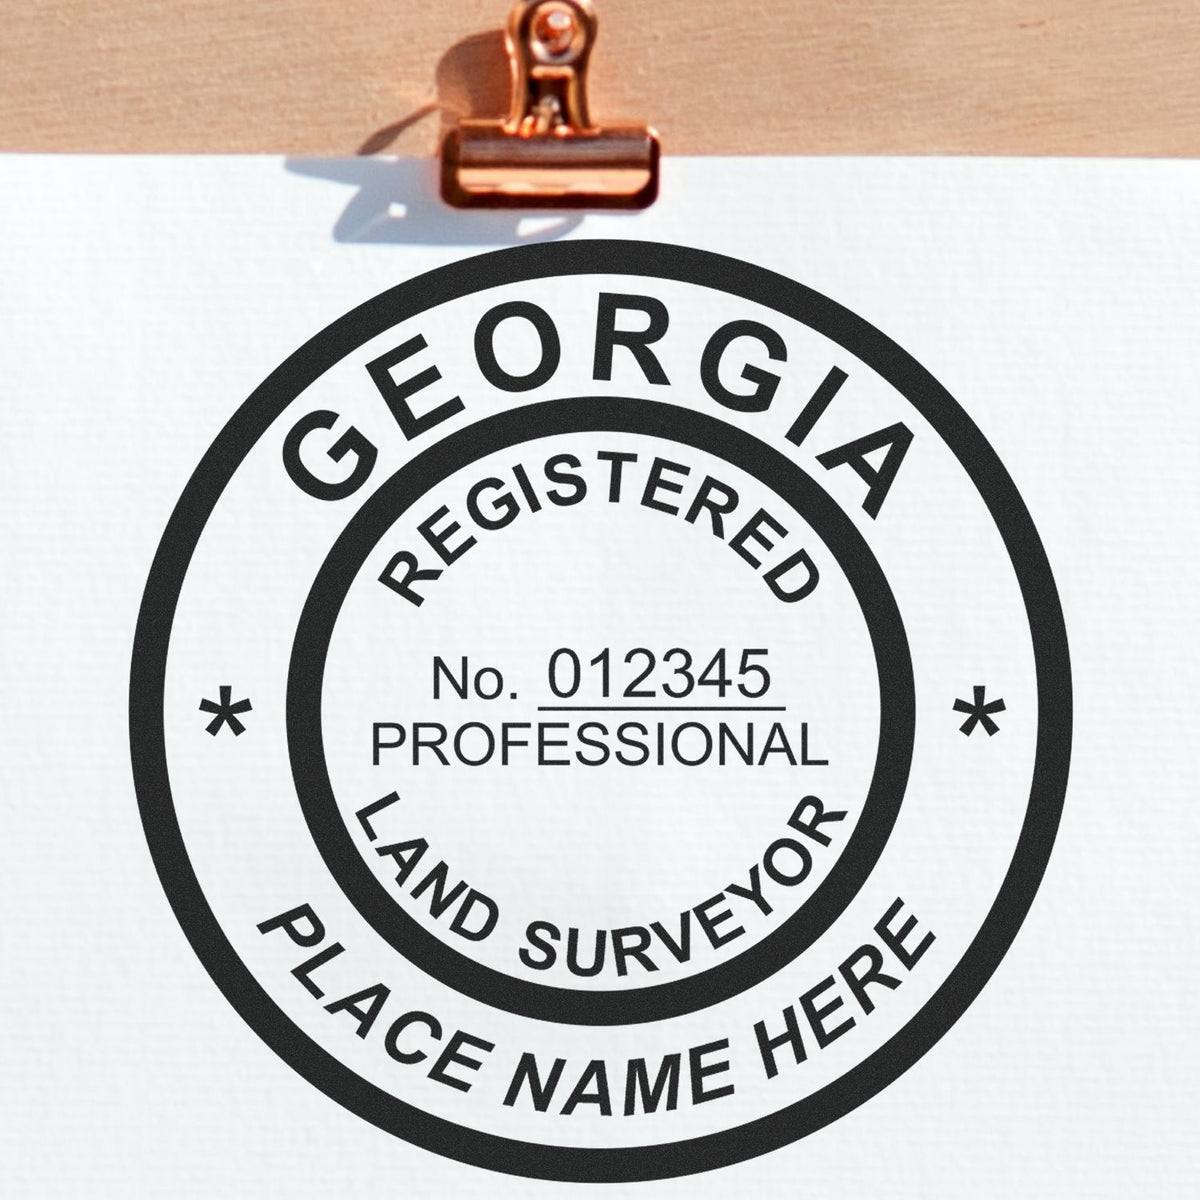 Georgia Land Surveyor Seal Stamp In Use Photo